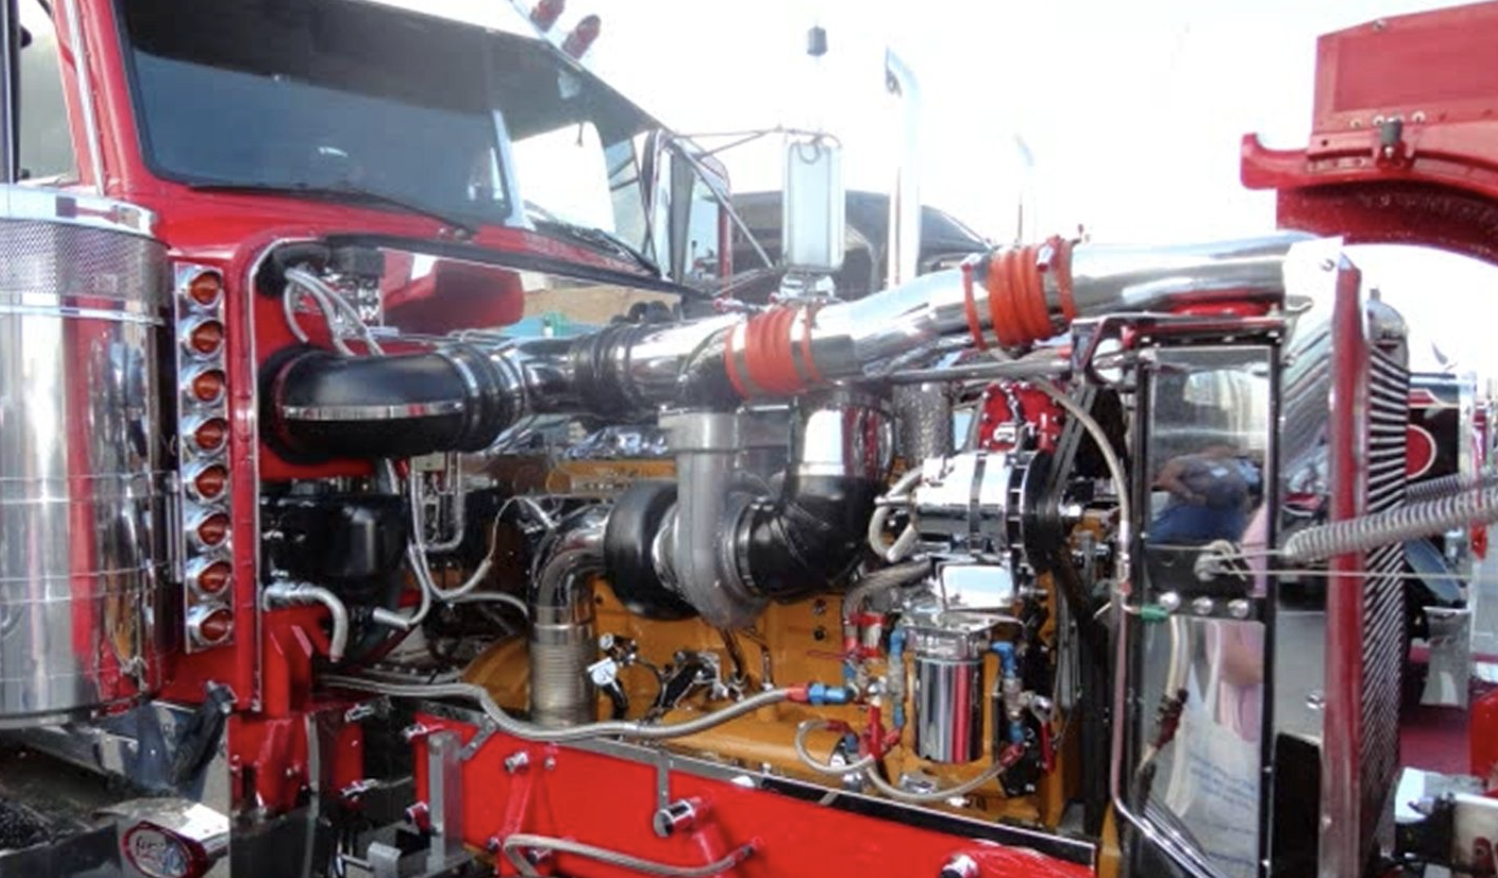 an image of Santa Ana truck engine repair